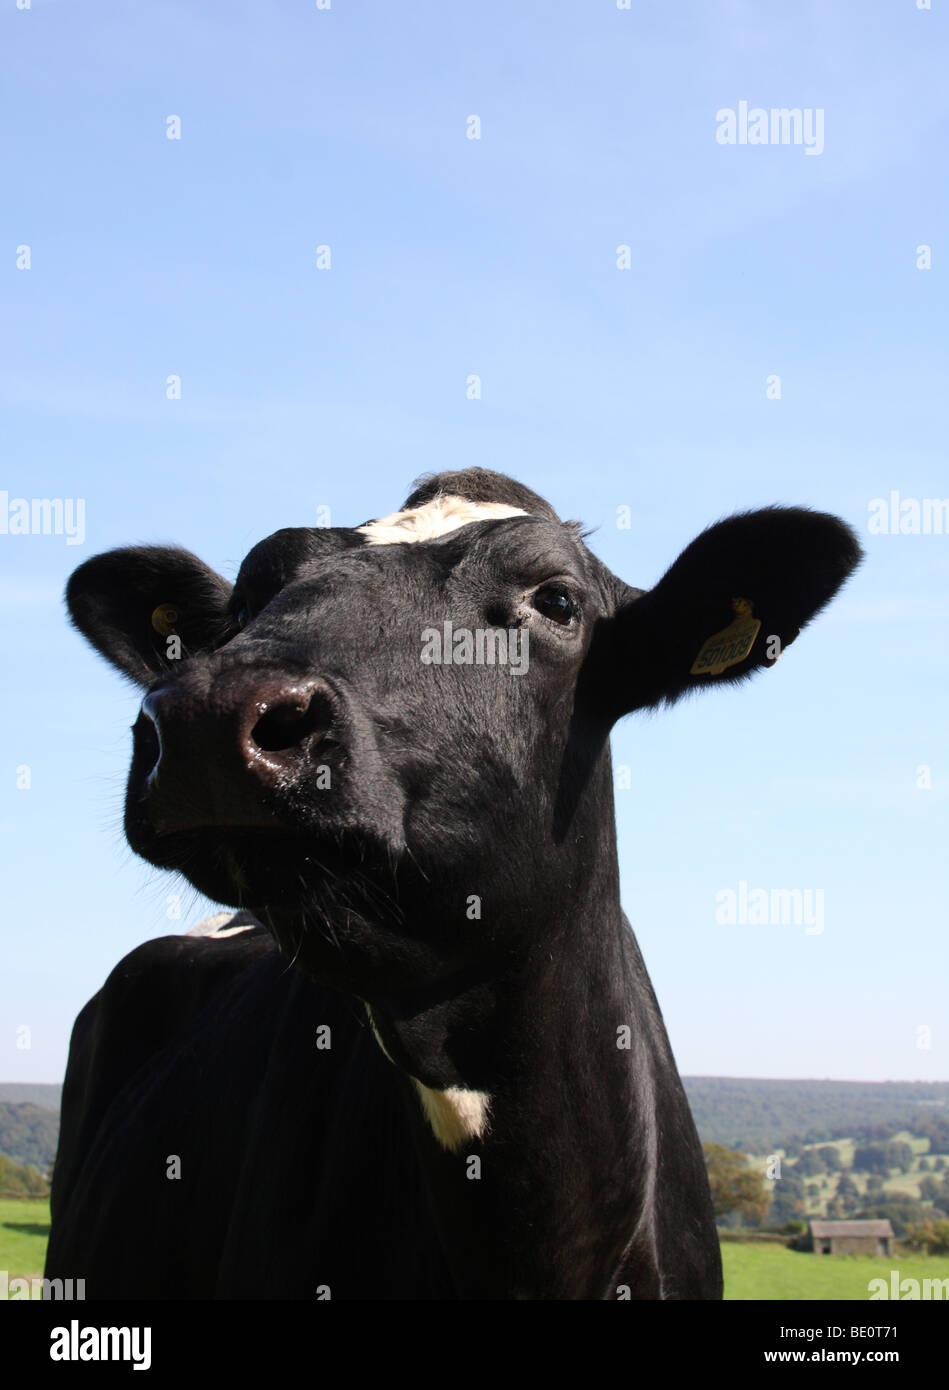 A fresian cow on a farm in Derbyshire, England, U.K. Stock Photo